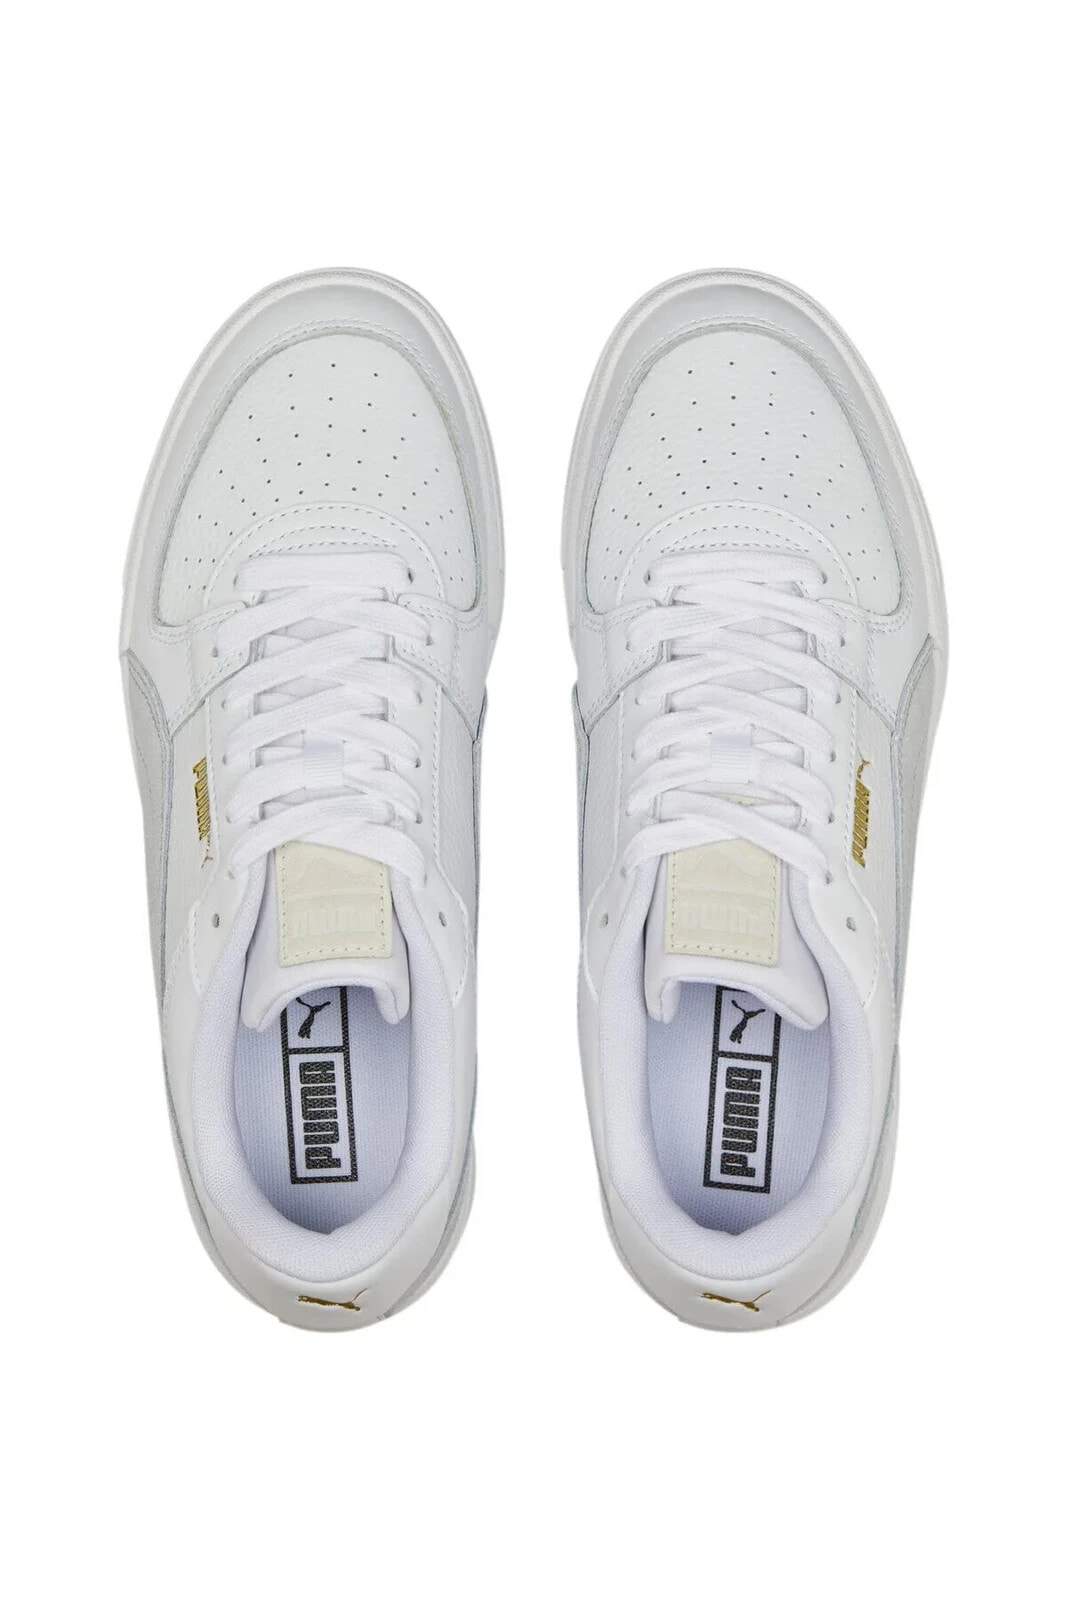 Ca Pro Suede Fs Unisex Beyaz Sneaker Ayakkabı 38732708